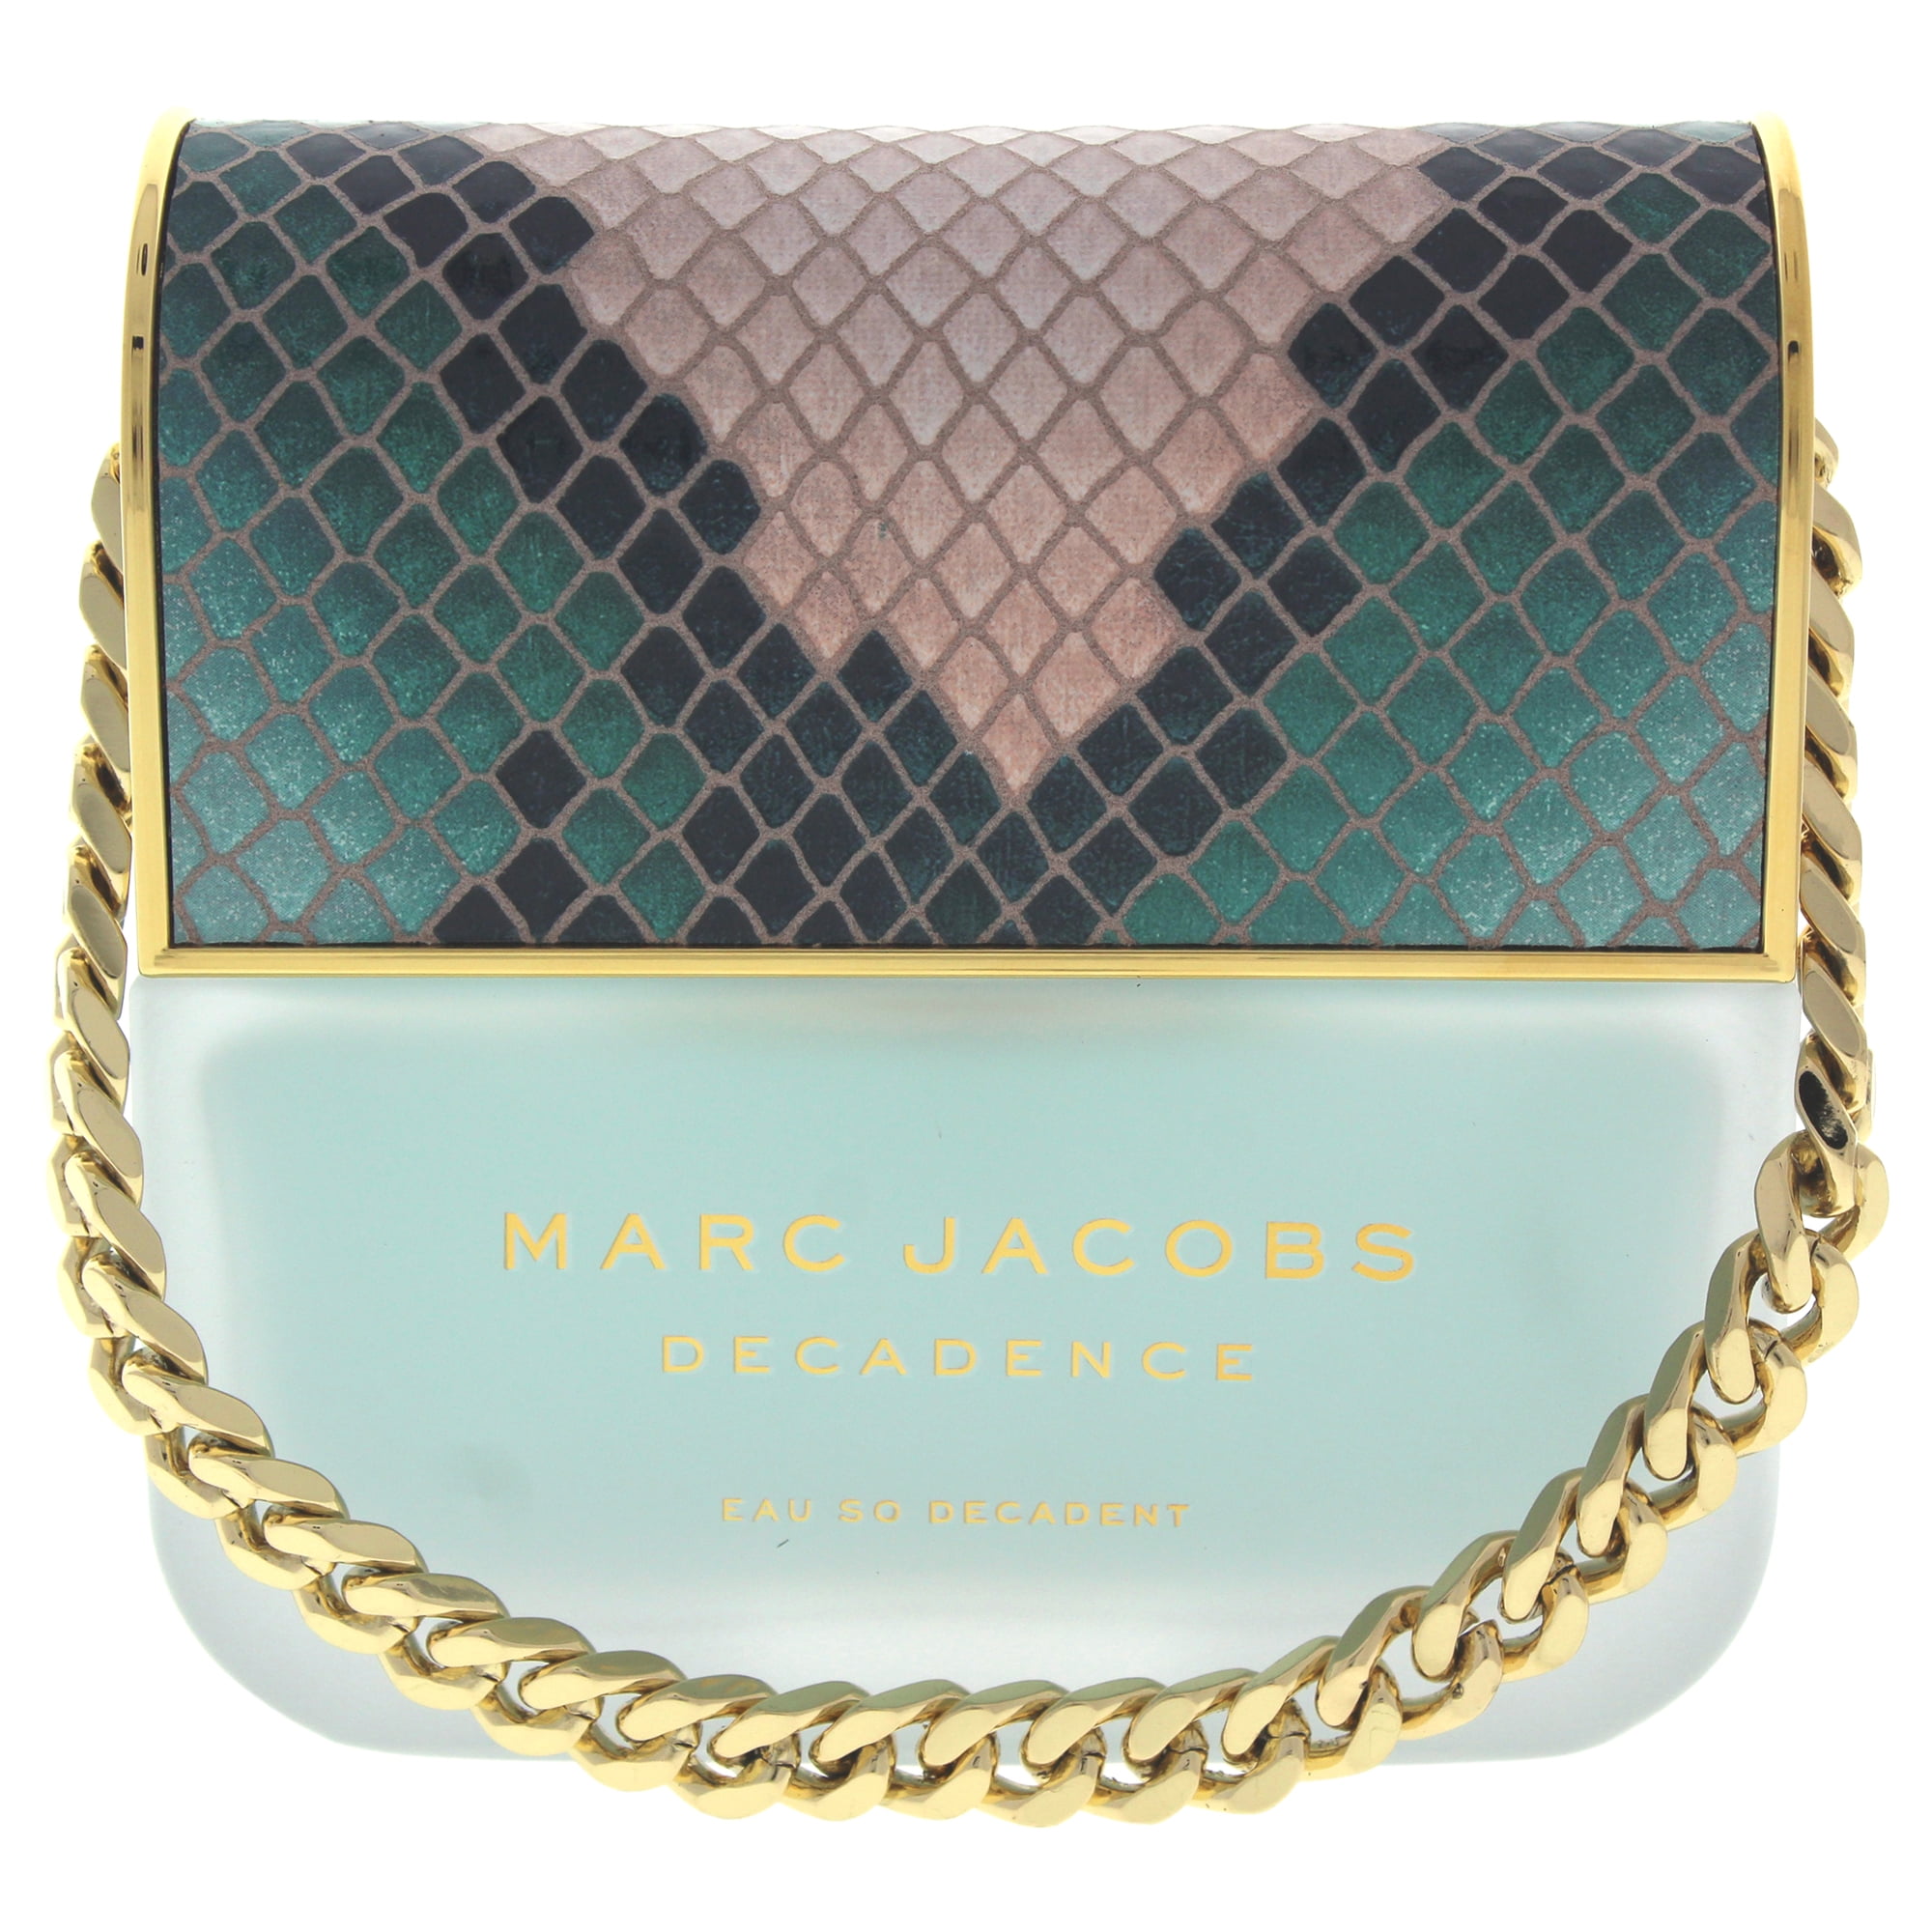 Marc Jacobs Decadence Eau So Decadent Eau de Perfume for Women, 3.4 Oz - Walmart.com